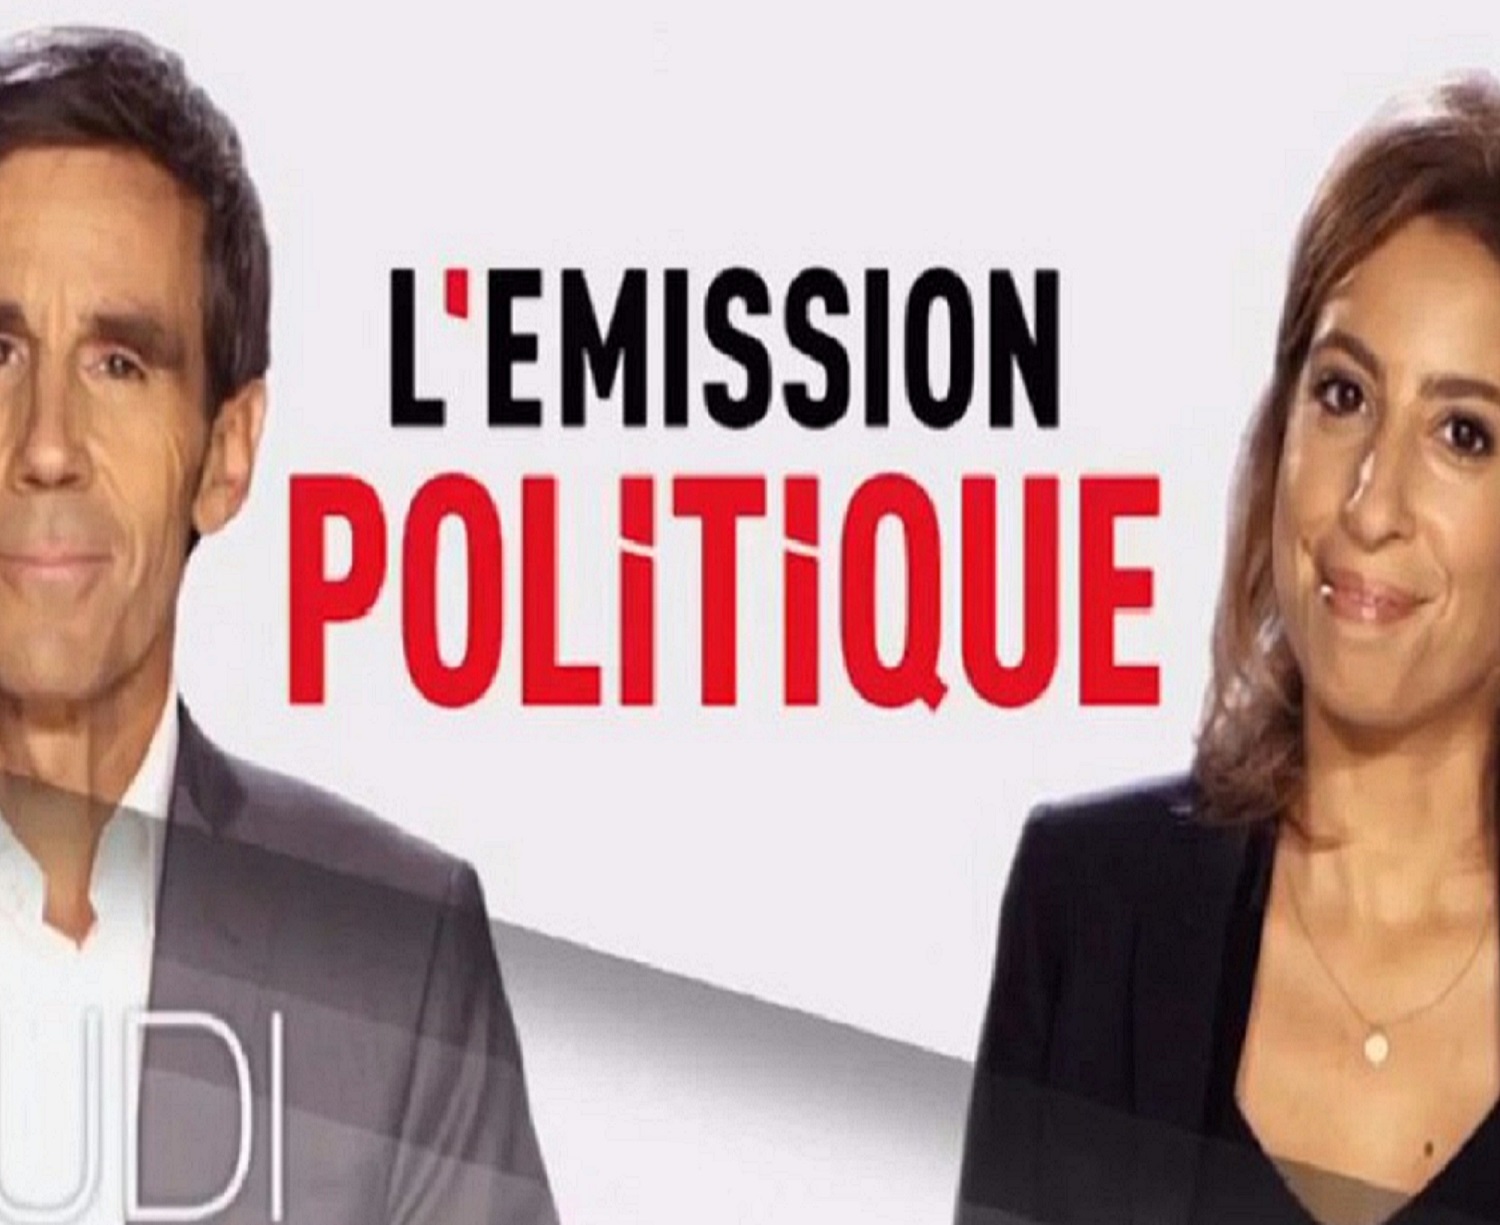 [Communiqué] Lallab dans “L’Emission Politique” du 5 janvier 2017 sur France 2